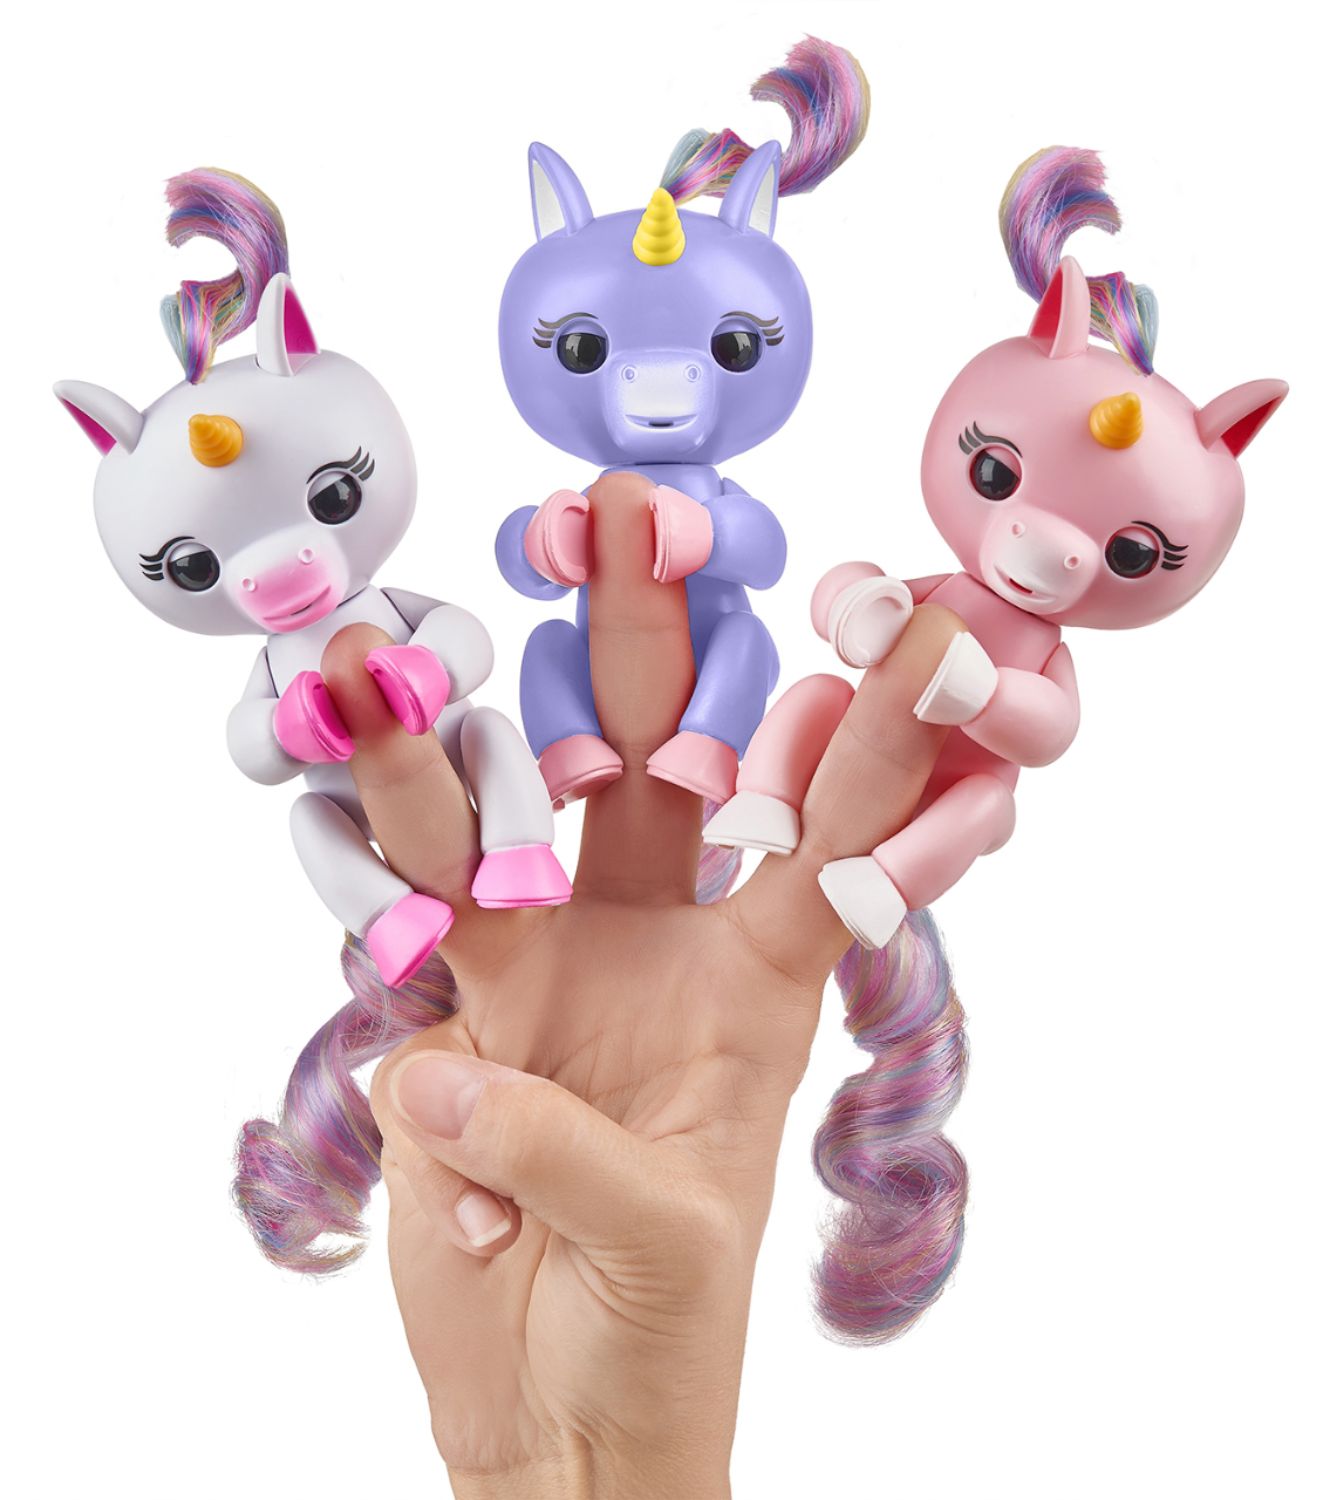 WowWee Fingerlings Baby Unicorn Alika Purple 3709 - Best Buy